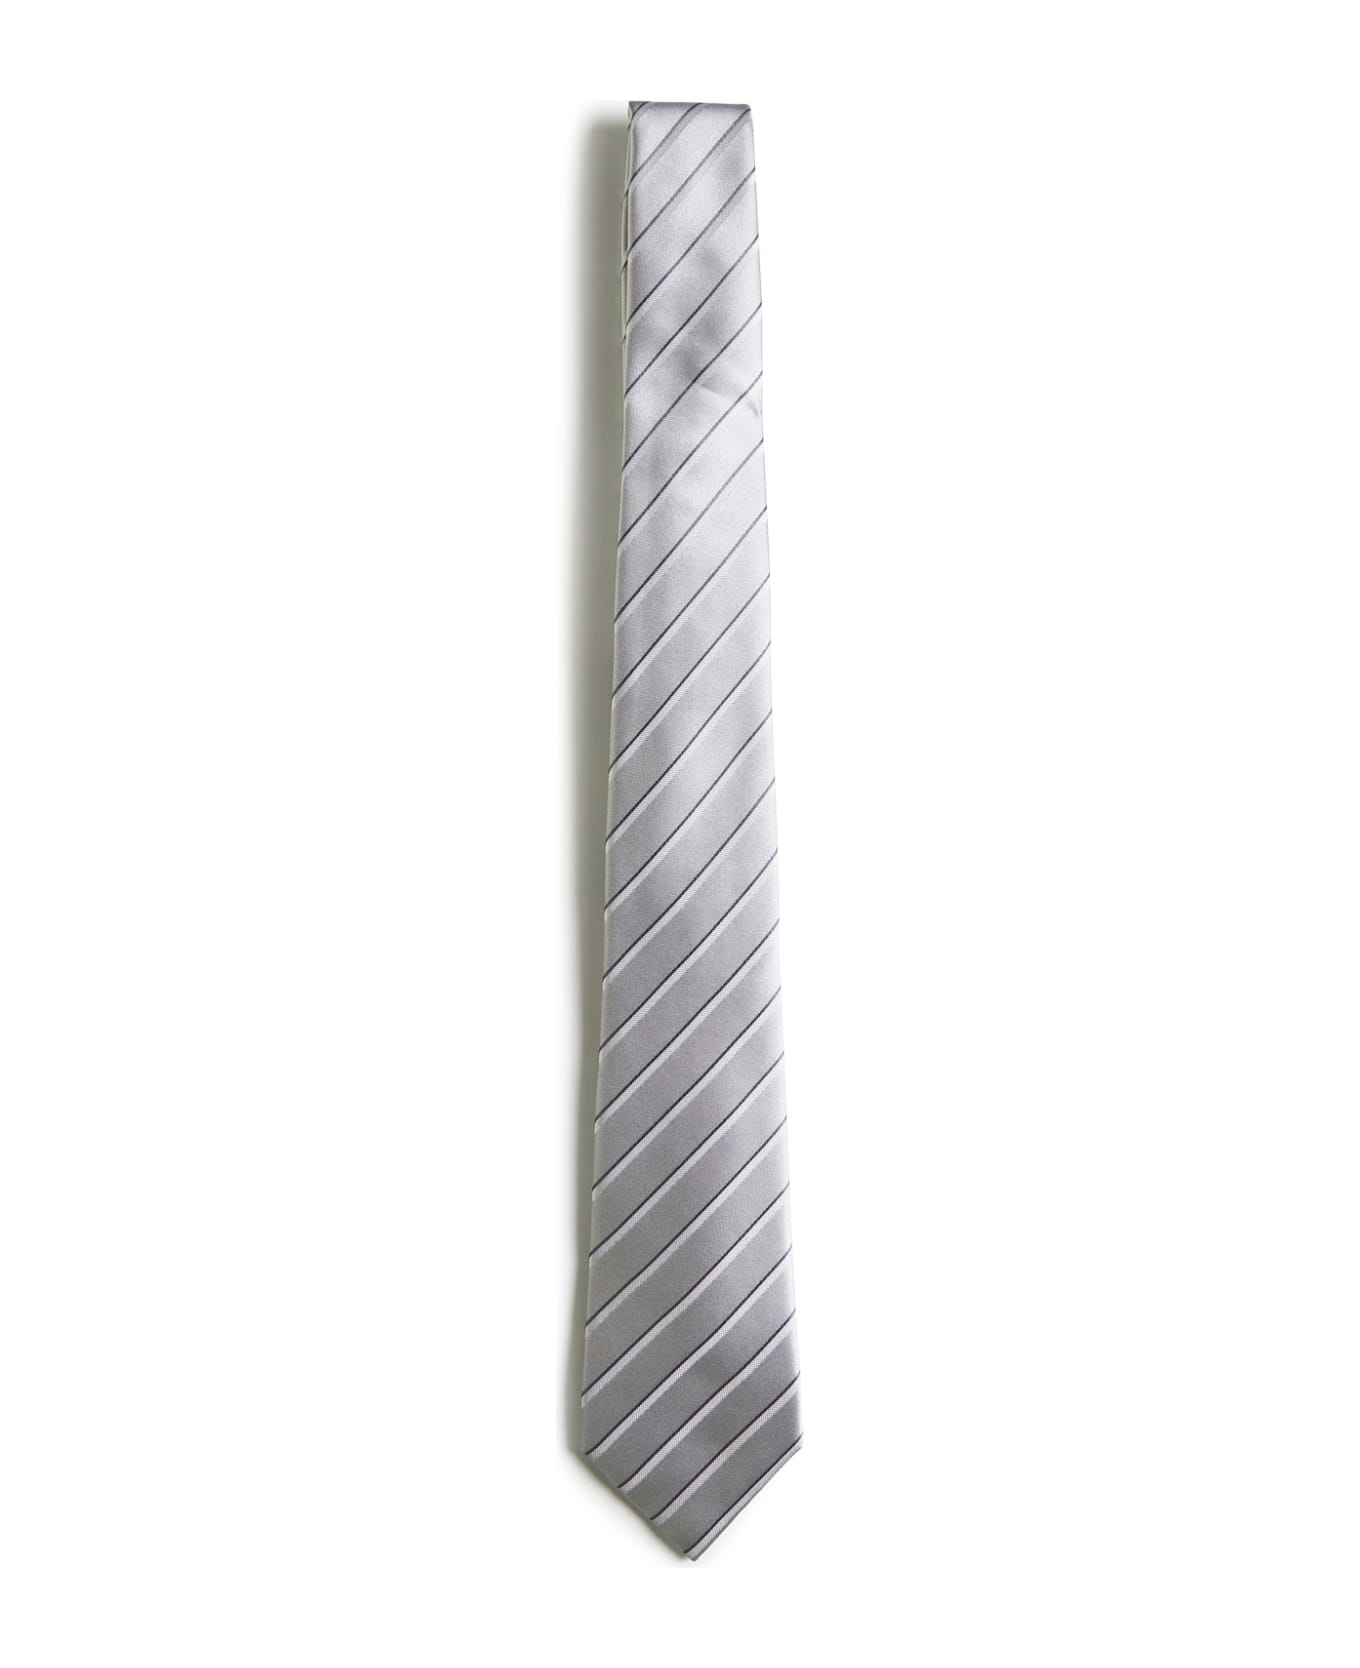 Giorgio Armani Tie - Grey